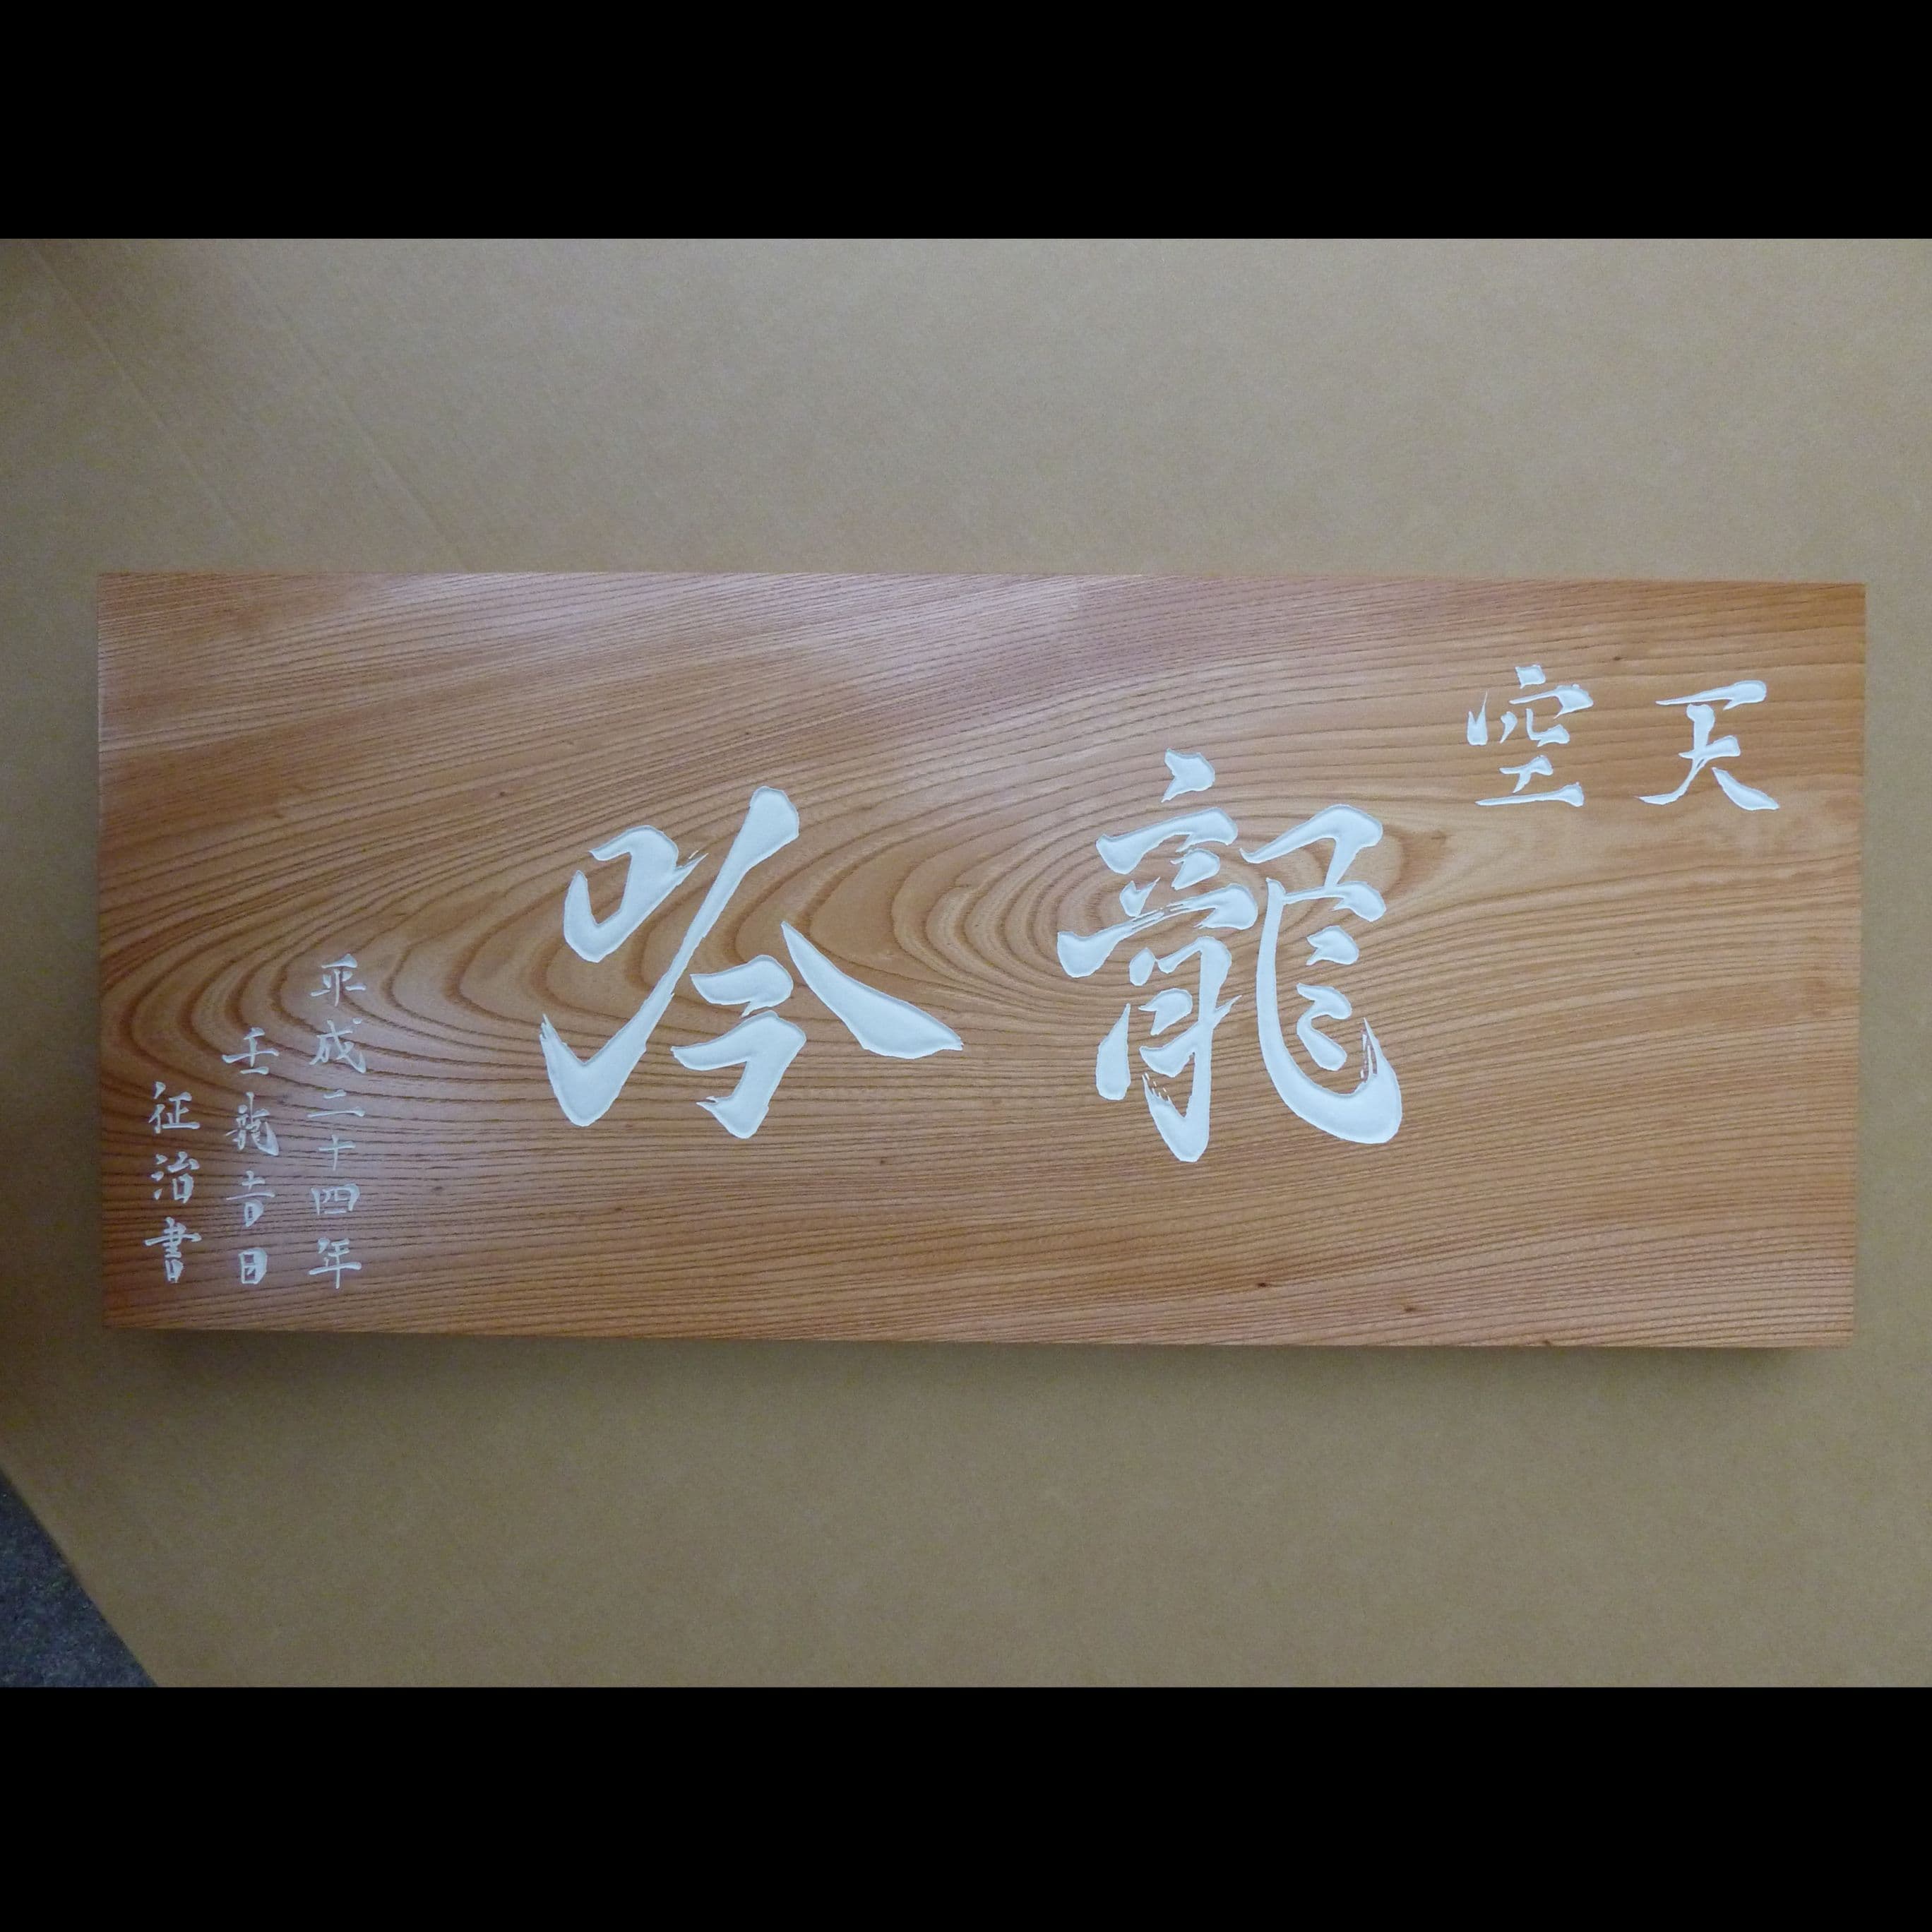 日本料理龍吟の香港支店の看板　欅板に白胡粉仕上げの彫刻文字で格式を感じさせる看板